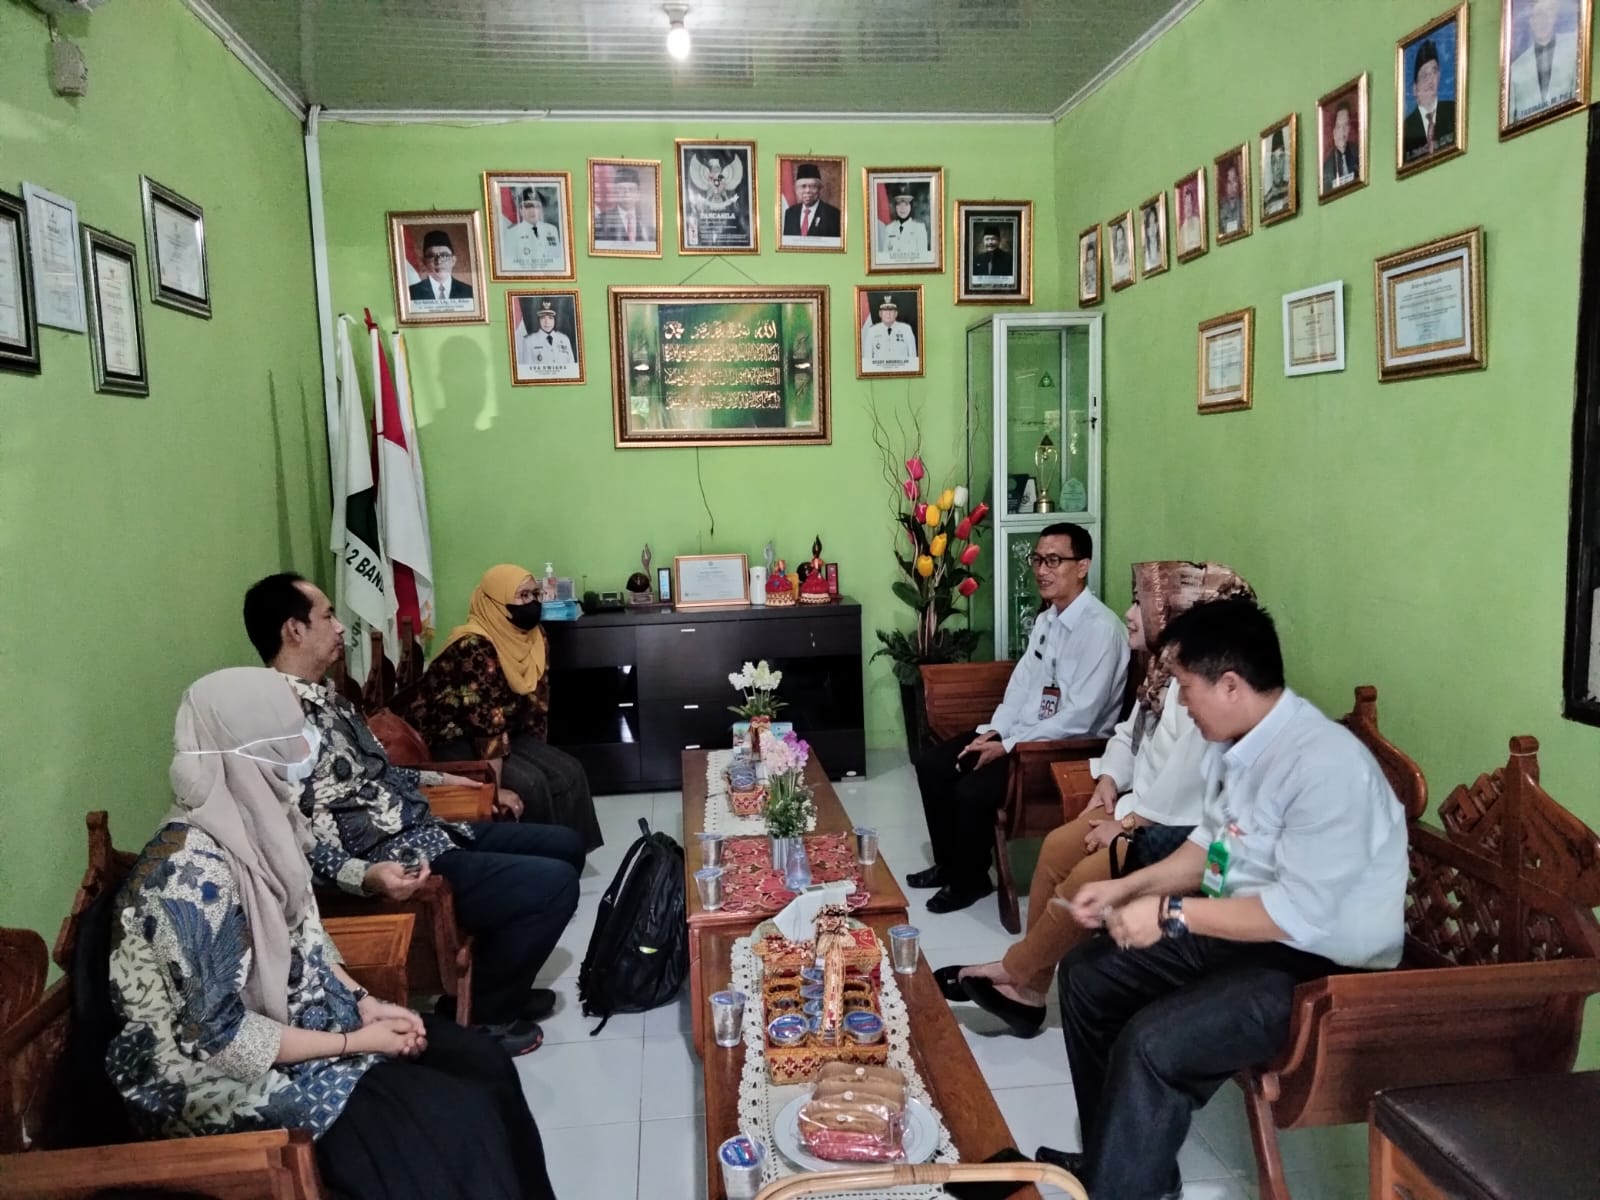 KPK Monev 9 Sekolah dan Madrasah Lampung